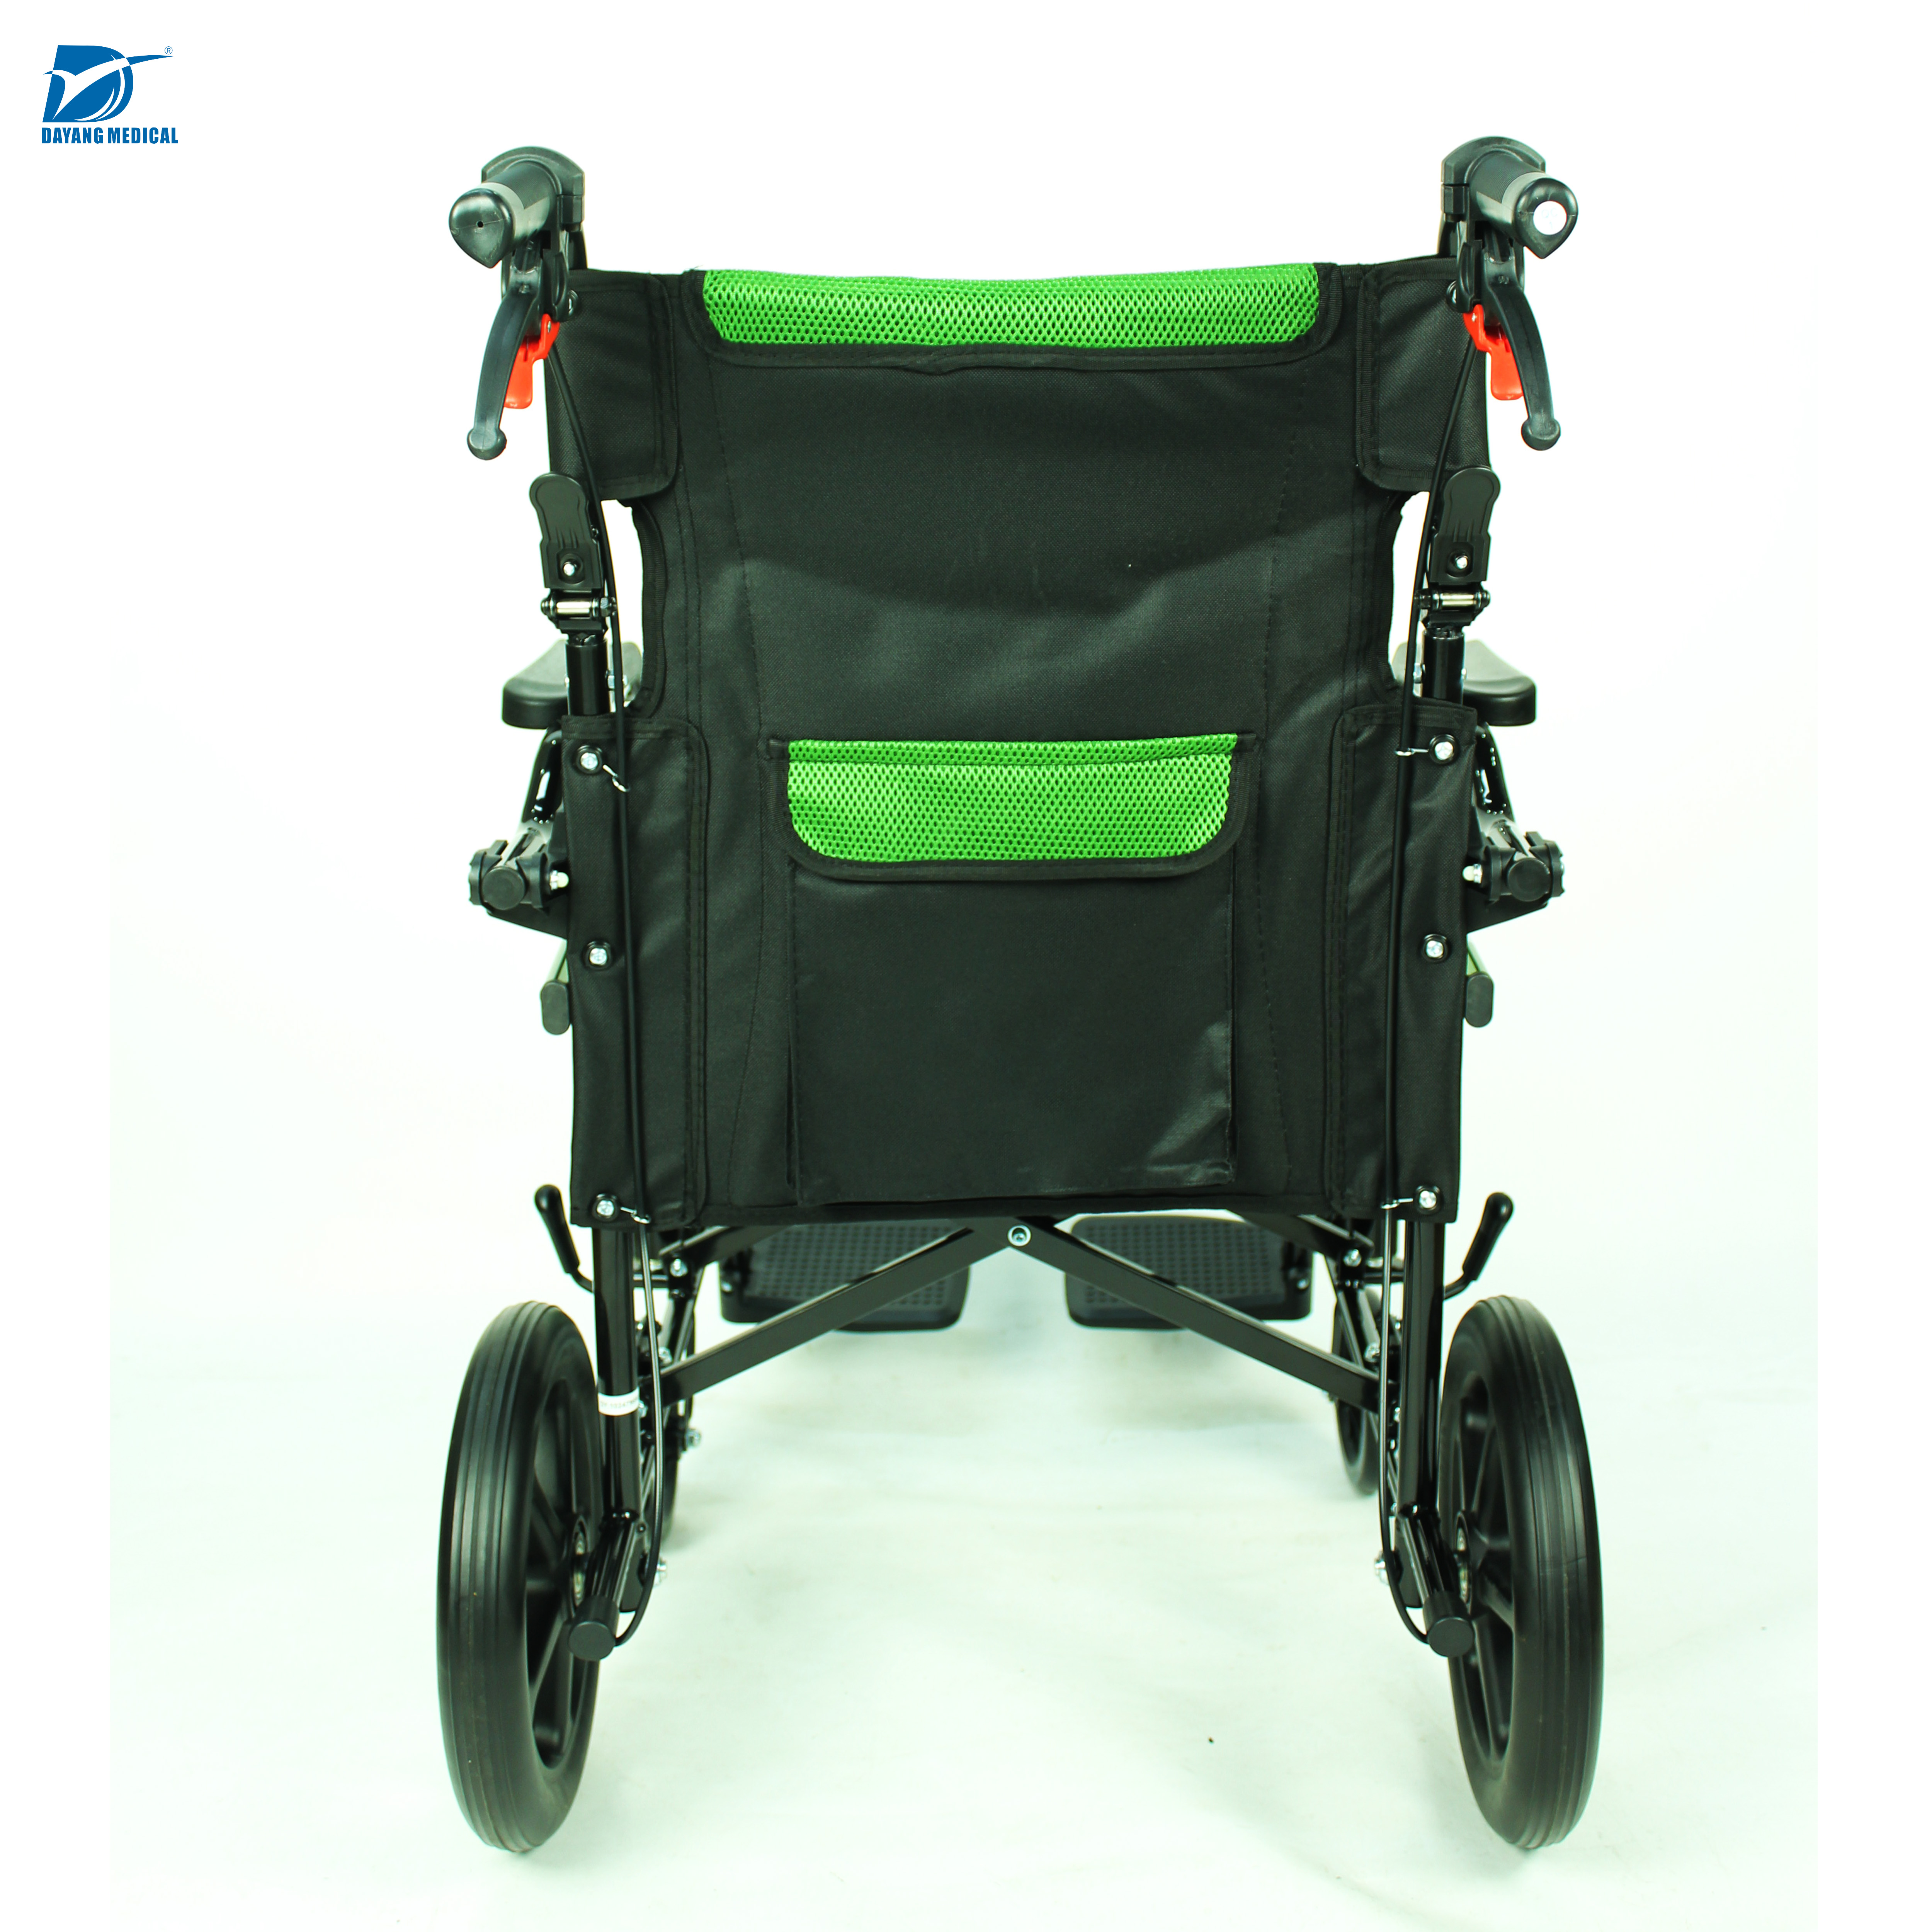 Купити обладнання для фізіотерапії Провідні постачальники Високоякісна інвалідна коляска з рамою з алюмінієвого сплаву,обладнання для фізіотерапії Провідні постачальники Високоякісна інвалідна коляска з рамою з алюмінієвого сплаву Ціна ,обладнання для фізіотерапії Провідні постачальники Високоякісна інвалідна коляска з рамою з алюмінієвого сплаву Бренд,обладнання для фізіотерапії Провідні постачальники Високоякісна інвалідна коляска з рамою з алюмінієвого сплаву Конструктор,обладнання для фізіотерапії Провідні постачальники Високоякісна інвалідна коляска з рамою з алюмінієвого сплаву Ринок,обладнання для фізіотерапії Провідні постачальники Високоякісна інвалідна коляска з рамою з алюмінієвого сплаву Компанія,